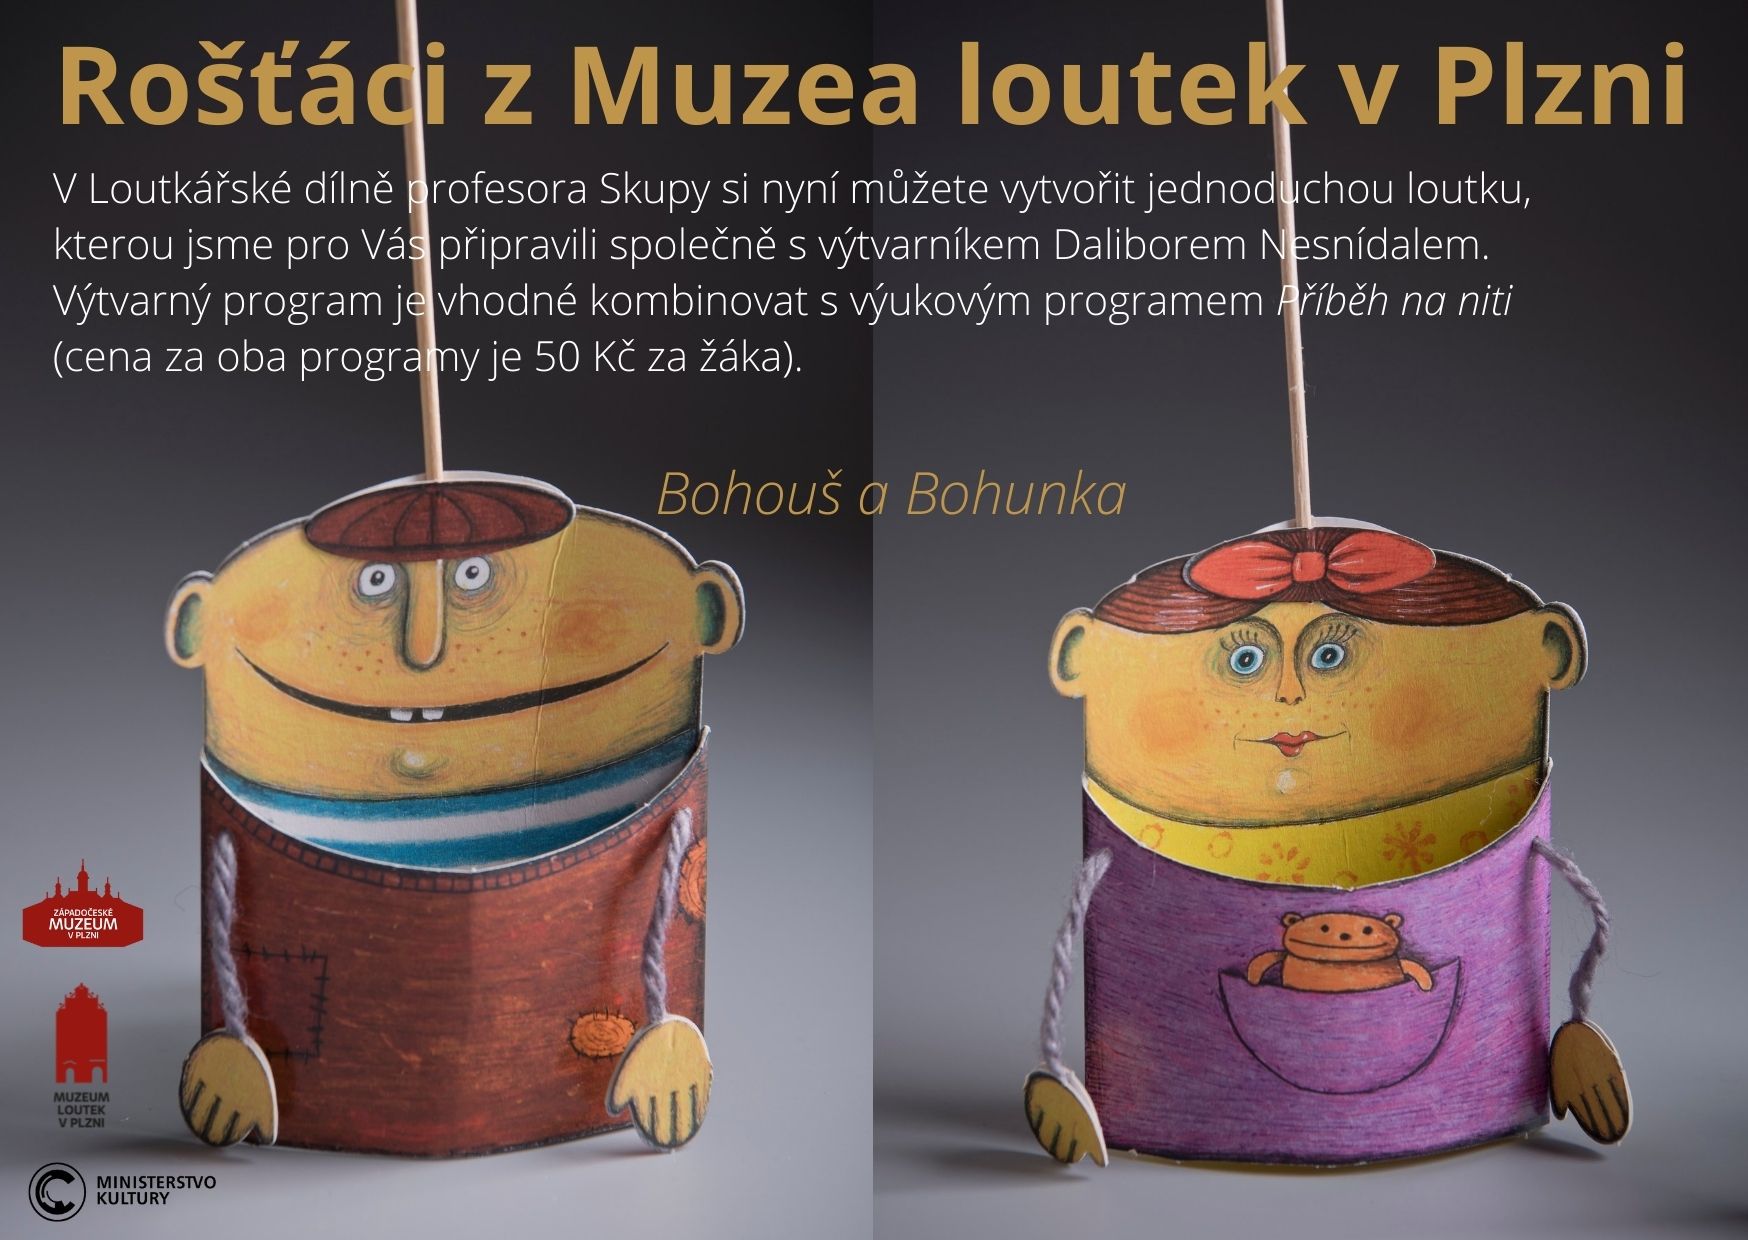 Rošťáci z Muzea loutek v Plzni